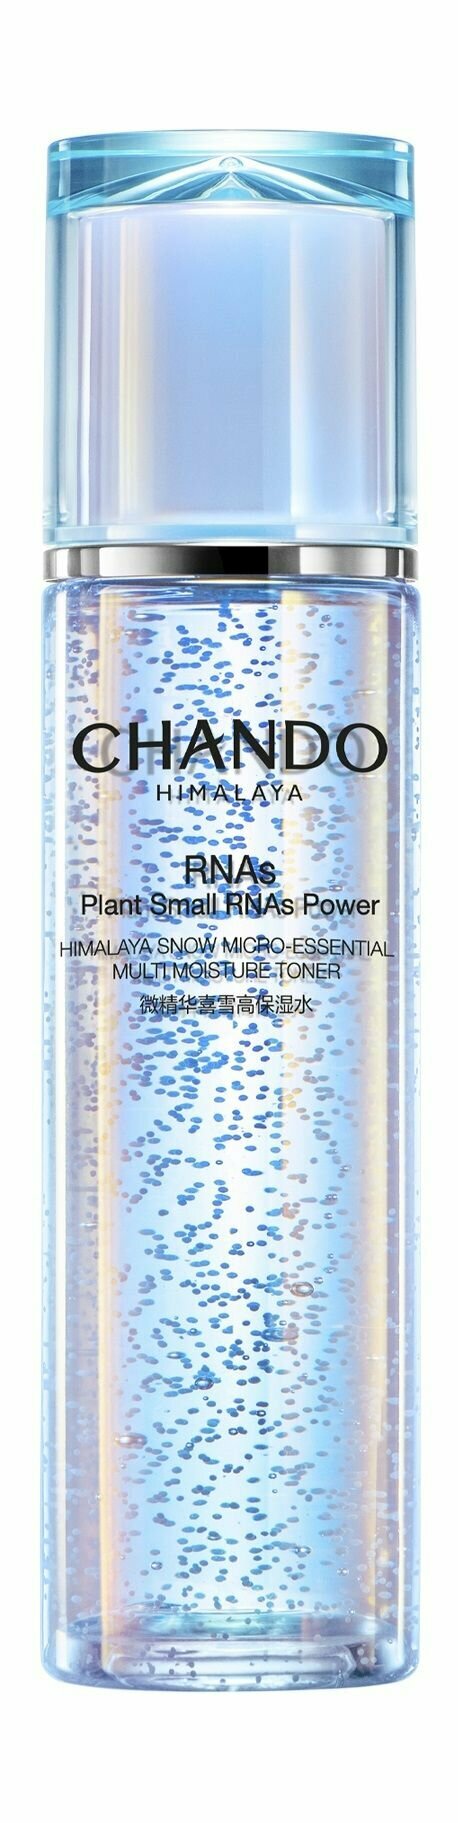 Увлажняющий тонер для лица с экстрактом гималайского укропа / Chando Himalaya Plants Small RNAs Power Toner